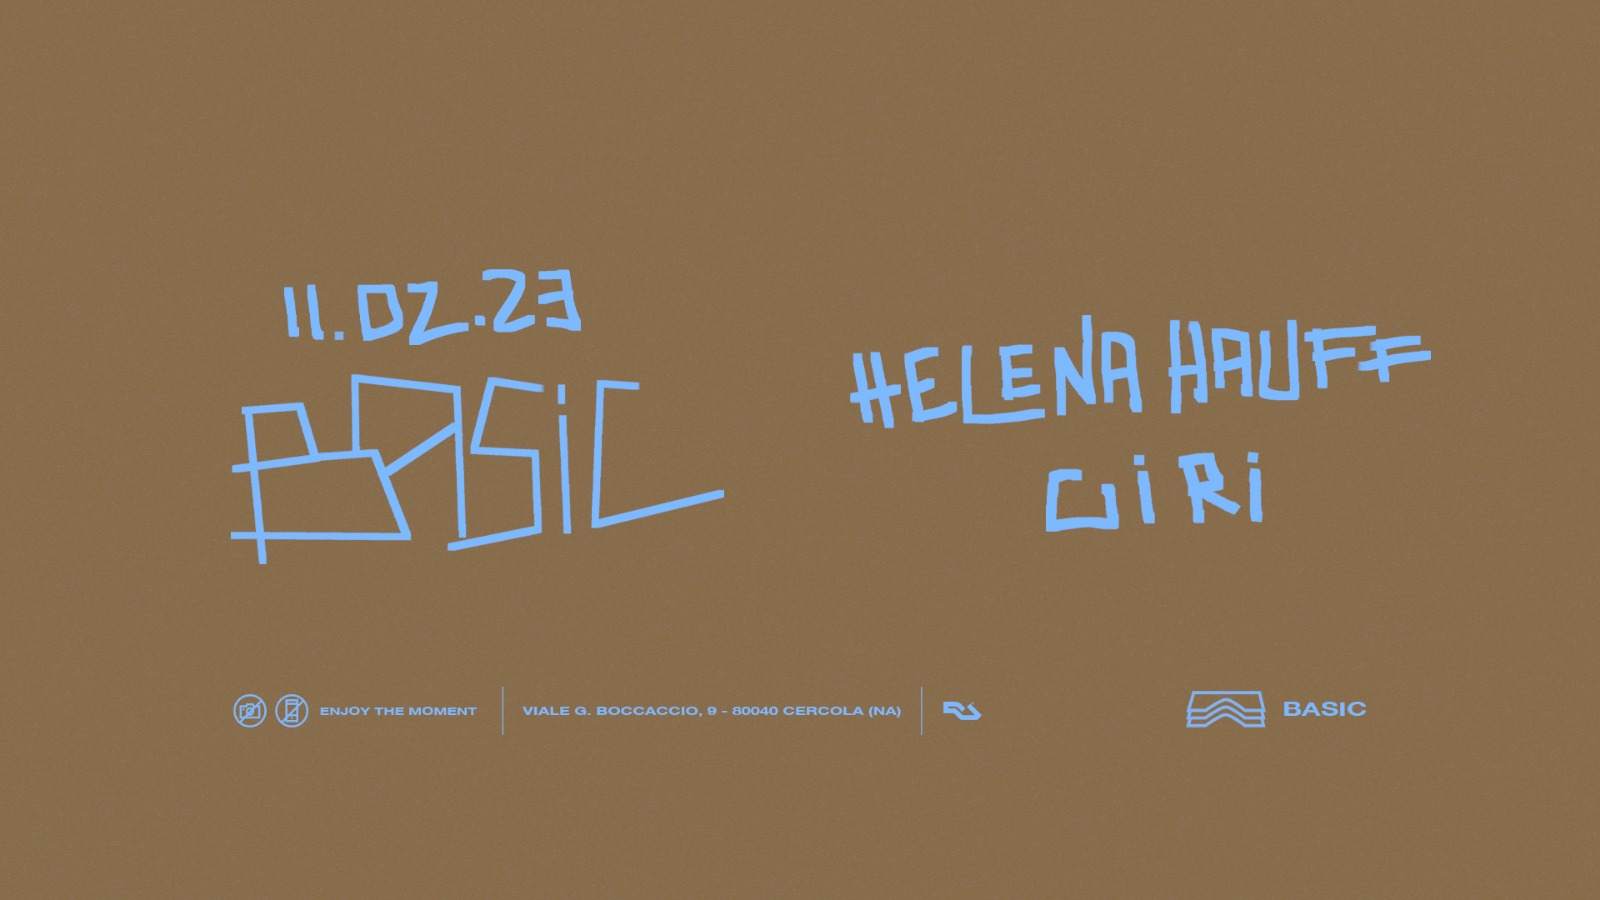 Basic • Helena Hauff + Giri - フライヤー表